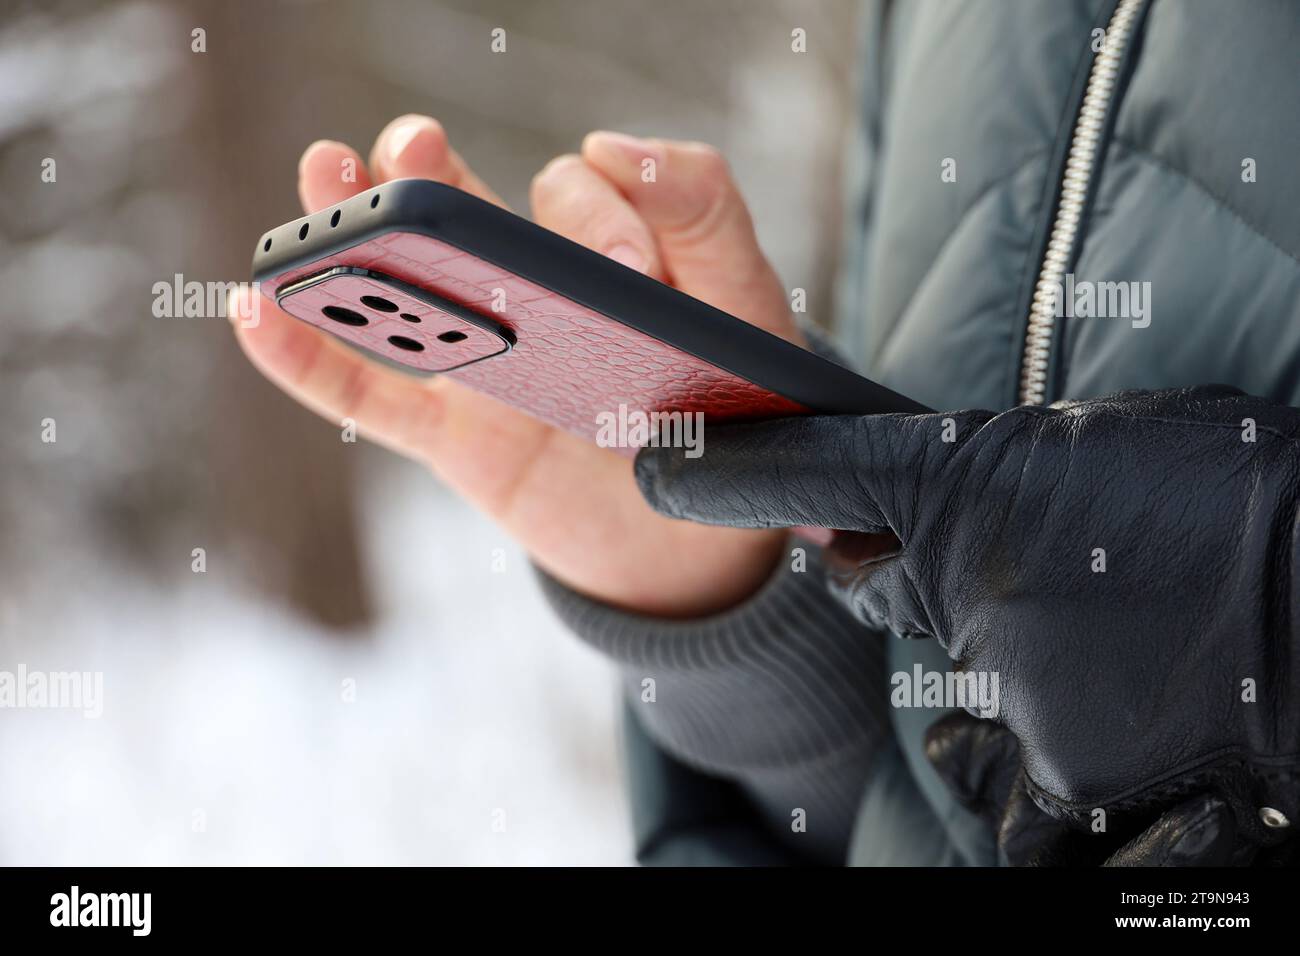 Les mains des femmes avec smartphone se rapprochent sur un arrière-plan flou. Femme utilisant un téléphone portable se tient dans une rue dans la neige hiver Banque D'Images